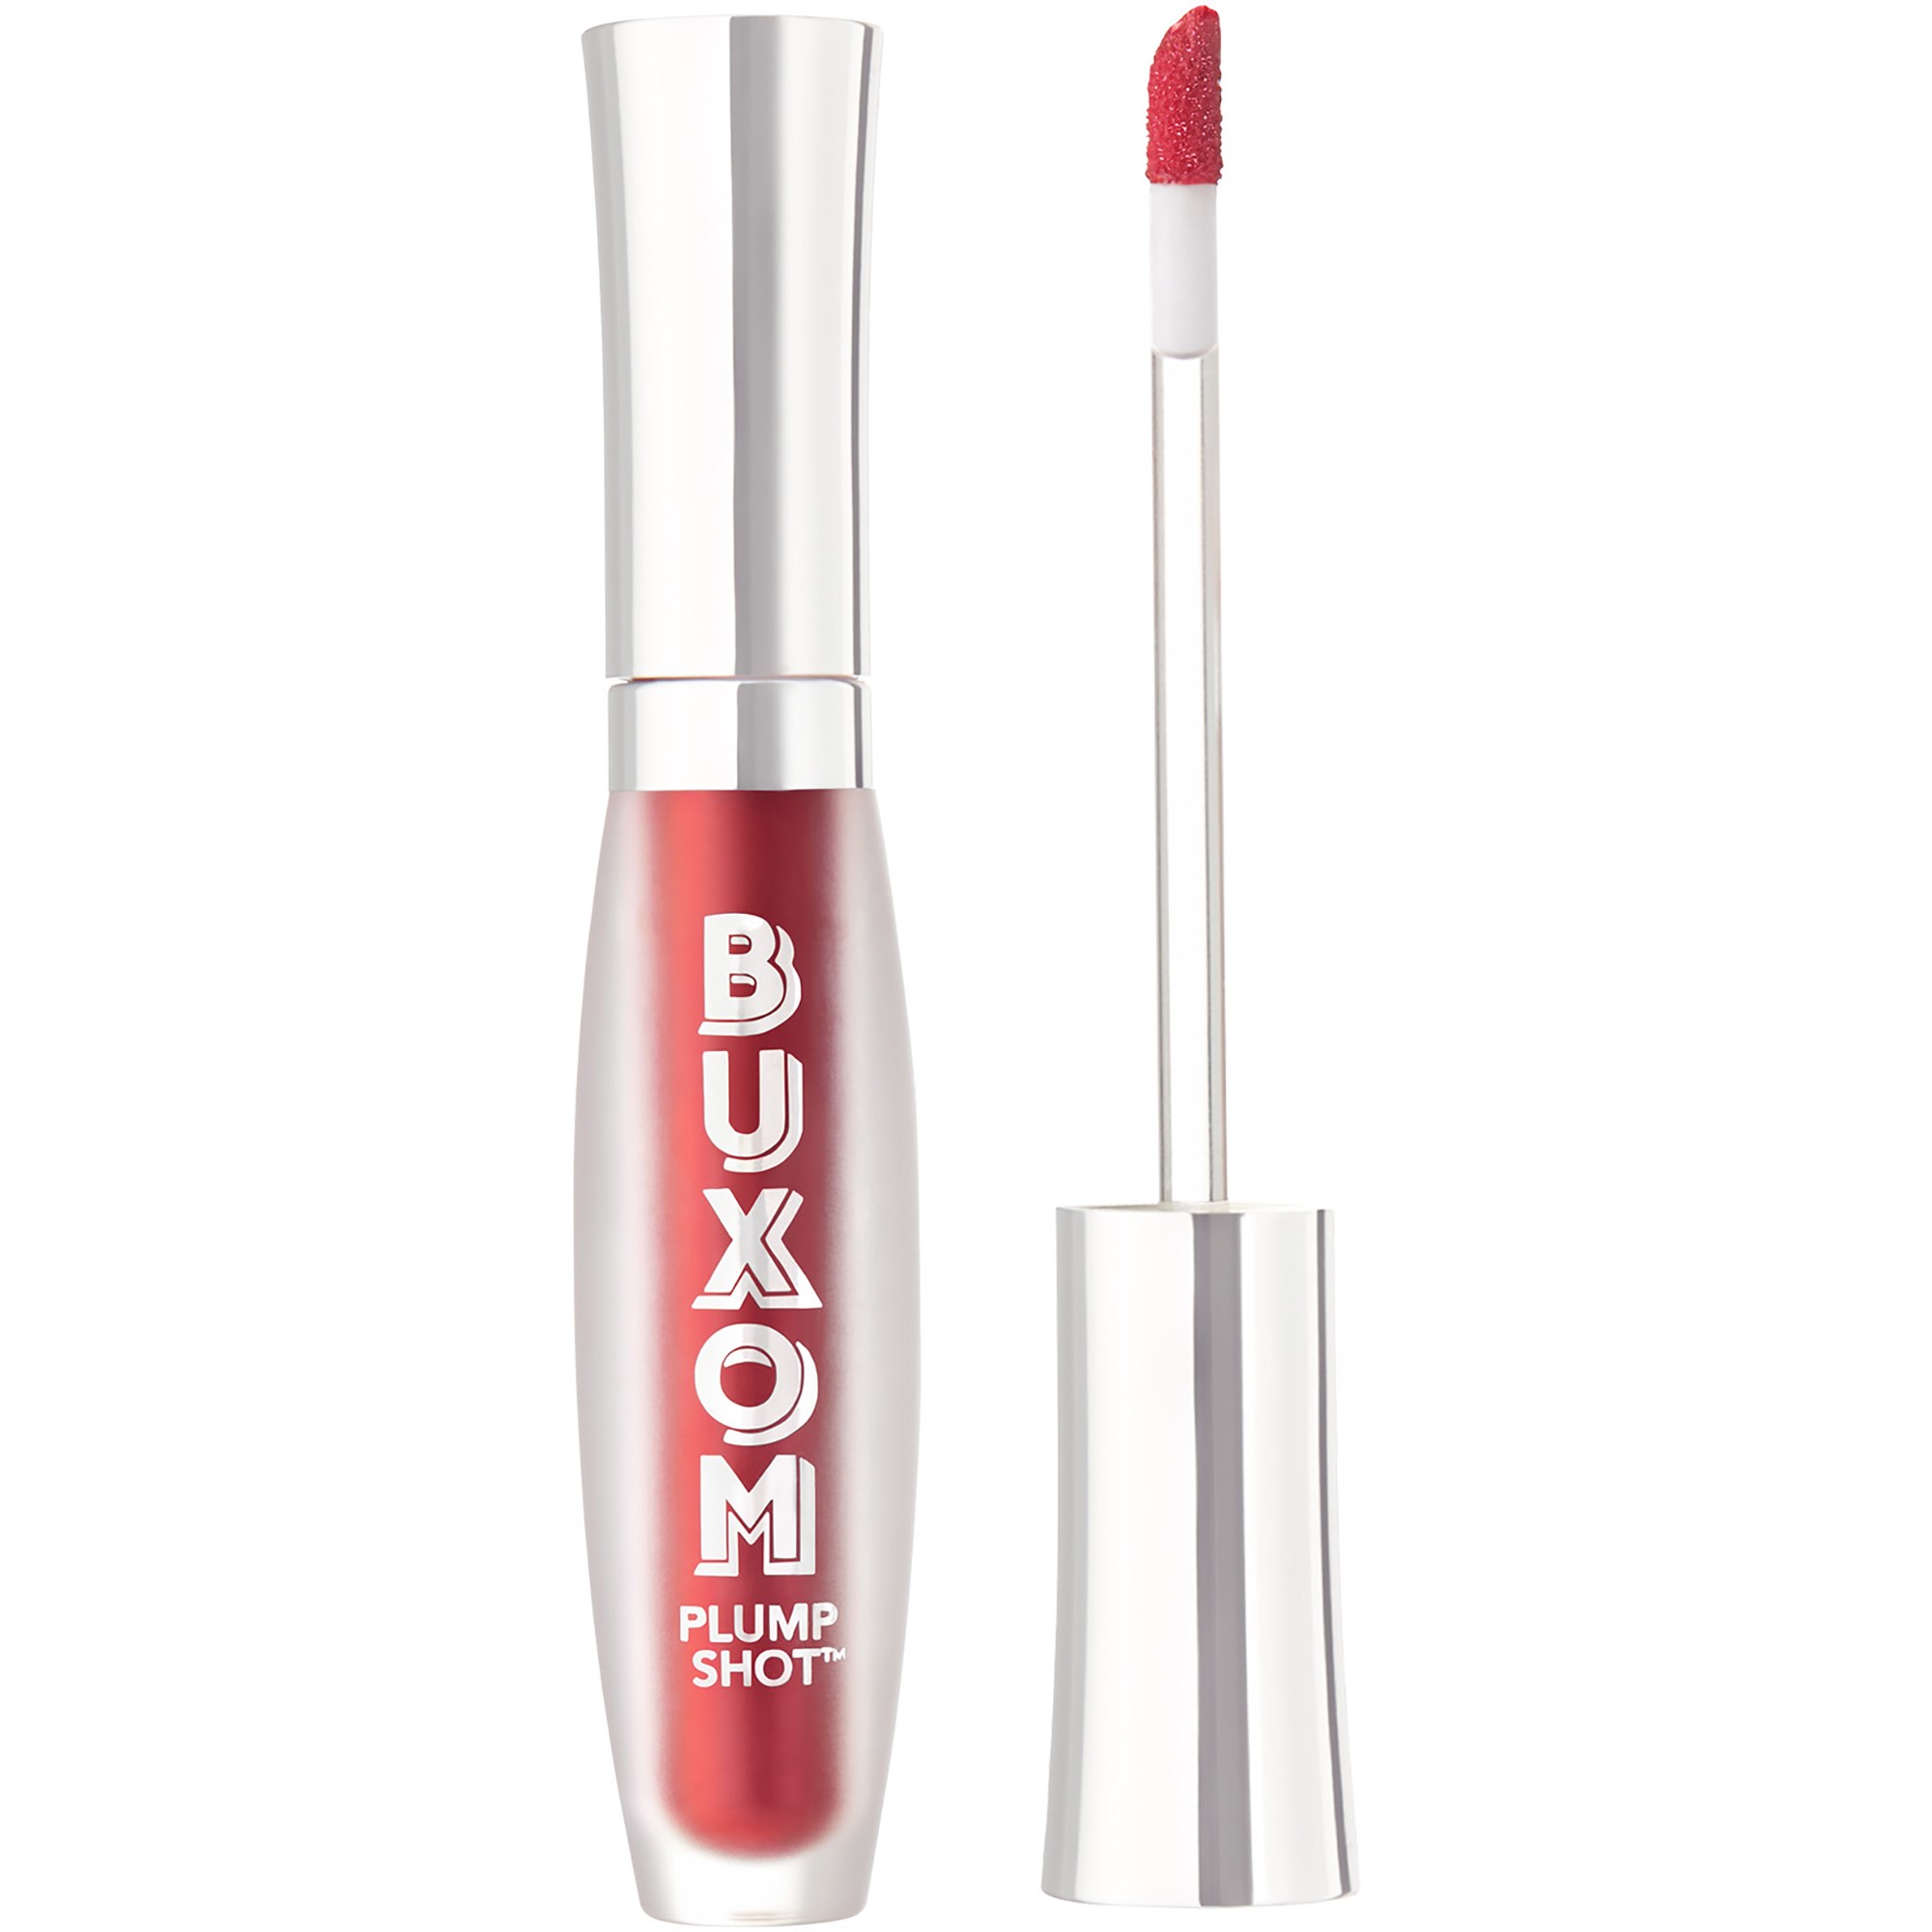 Bilde av Buxom Plump Shot™ Collagen-infused Lip Serum Enchanted Berry